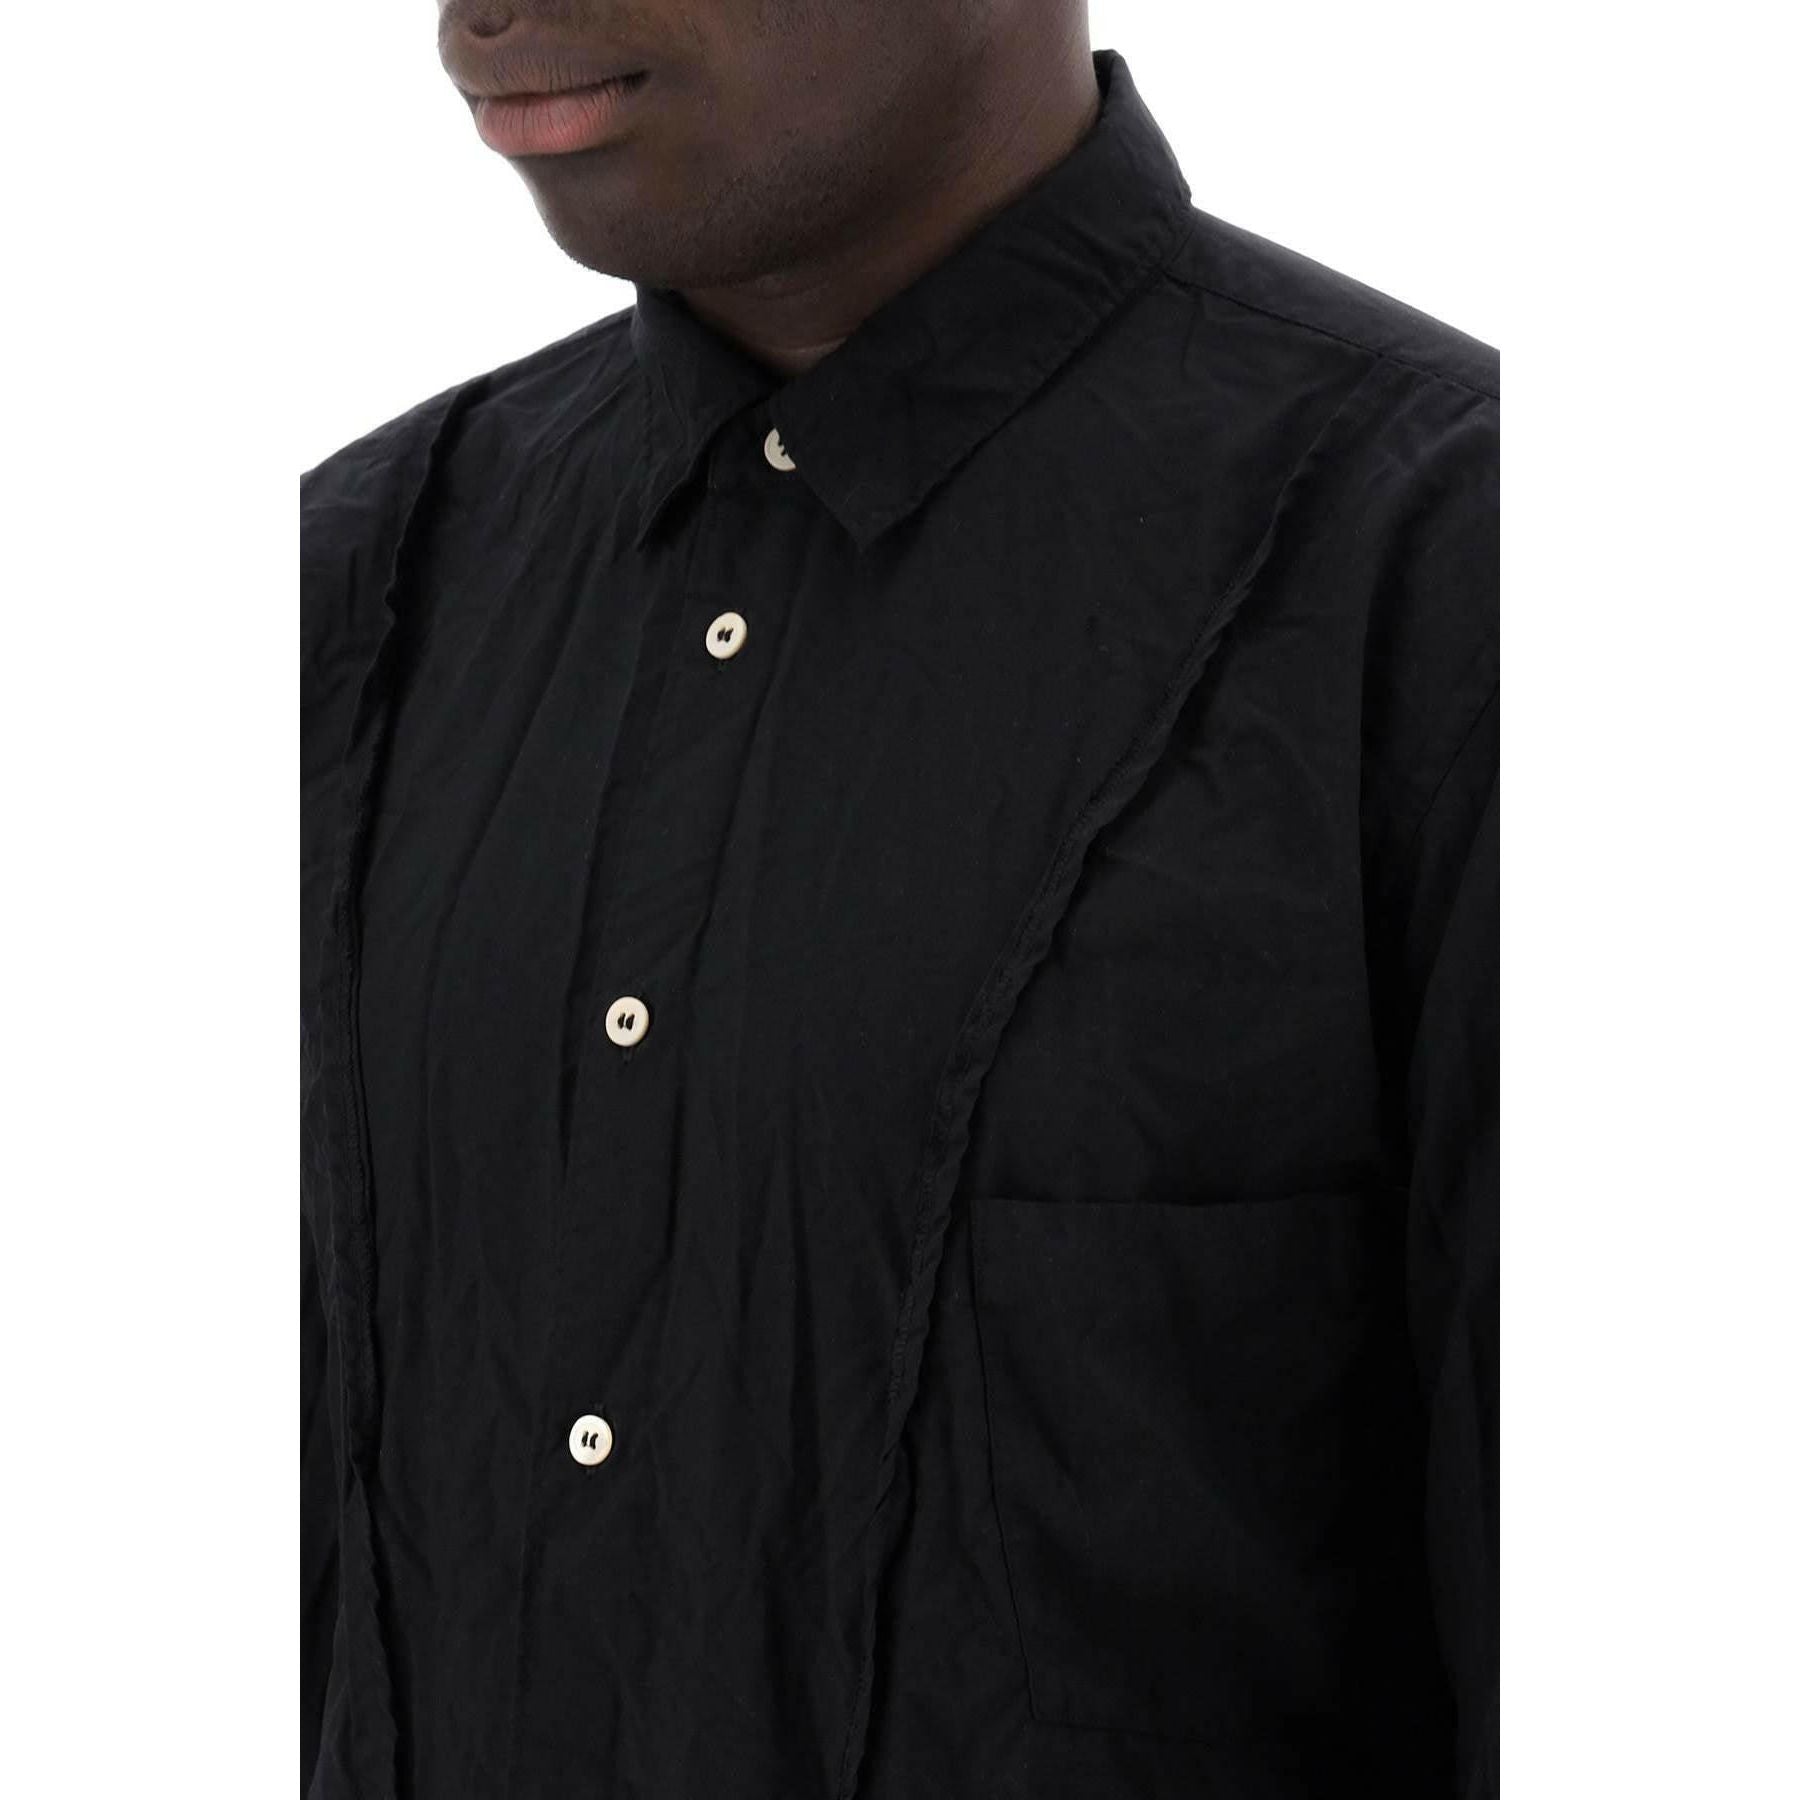 Black Asymmetrical Hem Shirt COMME DES GARCONS HOMME PLUS JOHN JULIA.